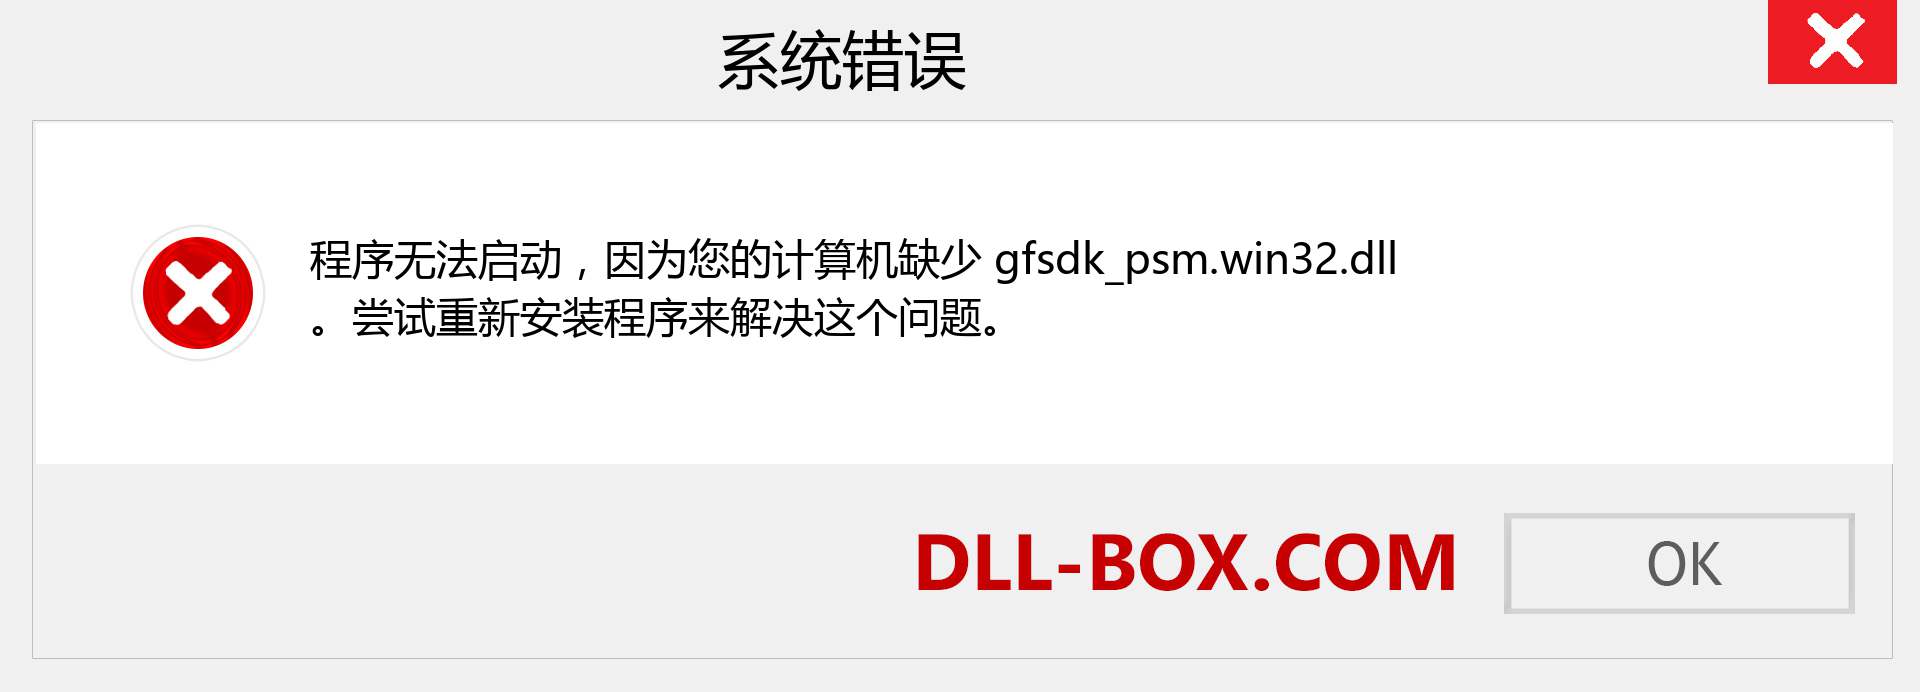 gfsdk_psm.win32.dll 文件丢失？。 适用于 Windows 7、8、10 的下载 - 修复 Windows、照片、图像上的 gfsdk_psm.win32 dll 丢失错误